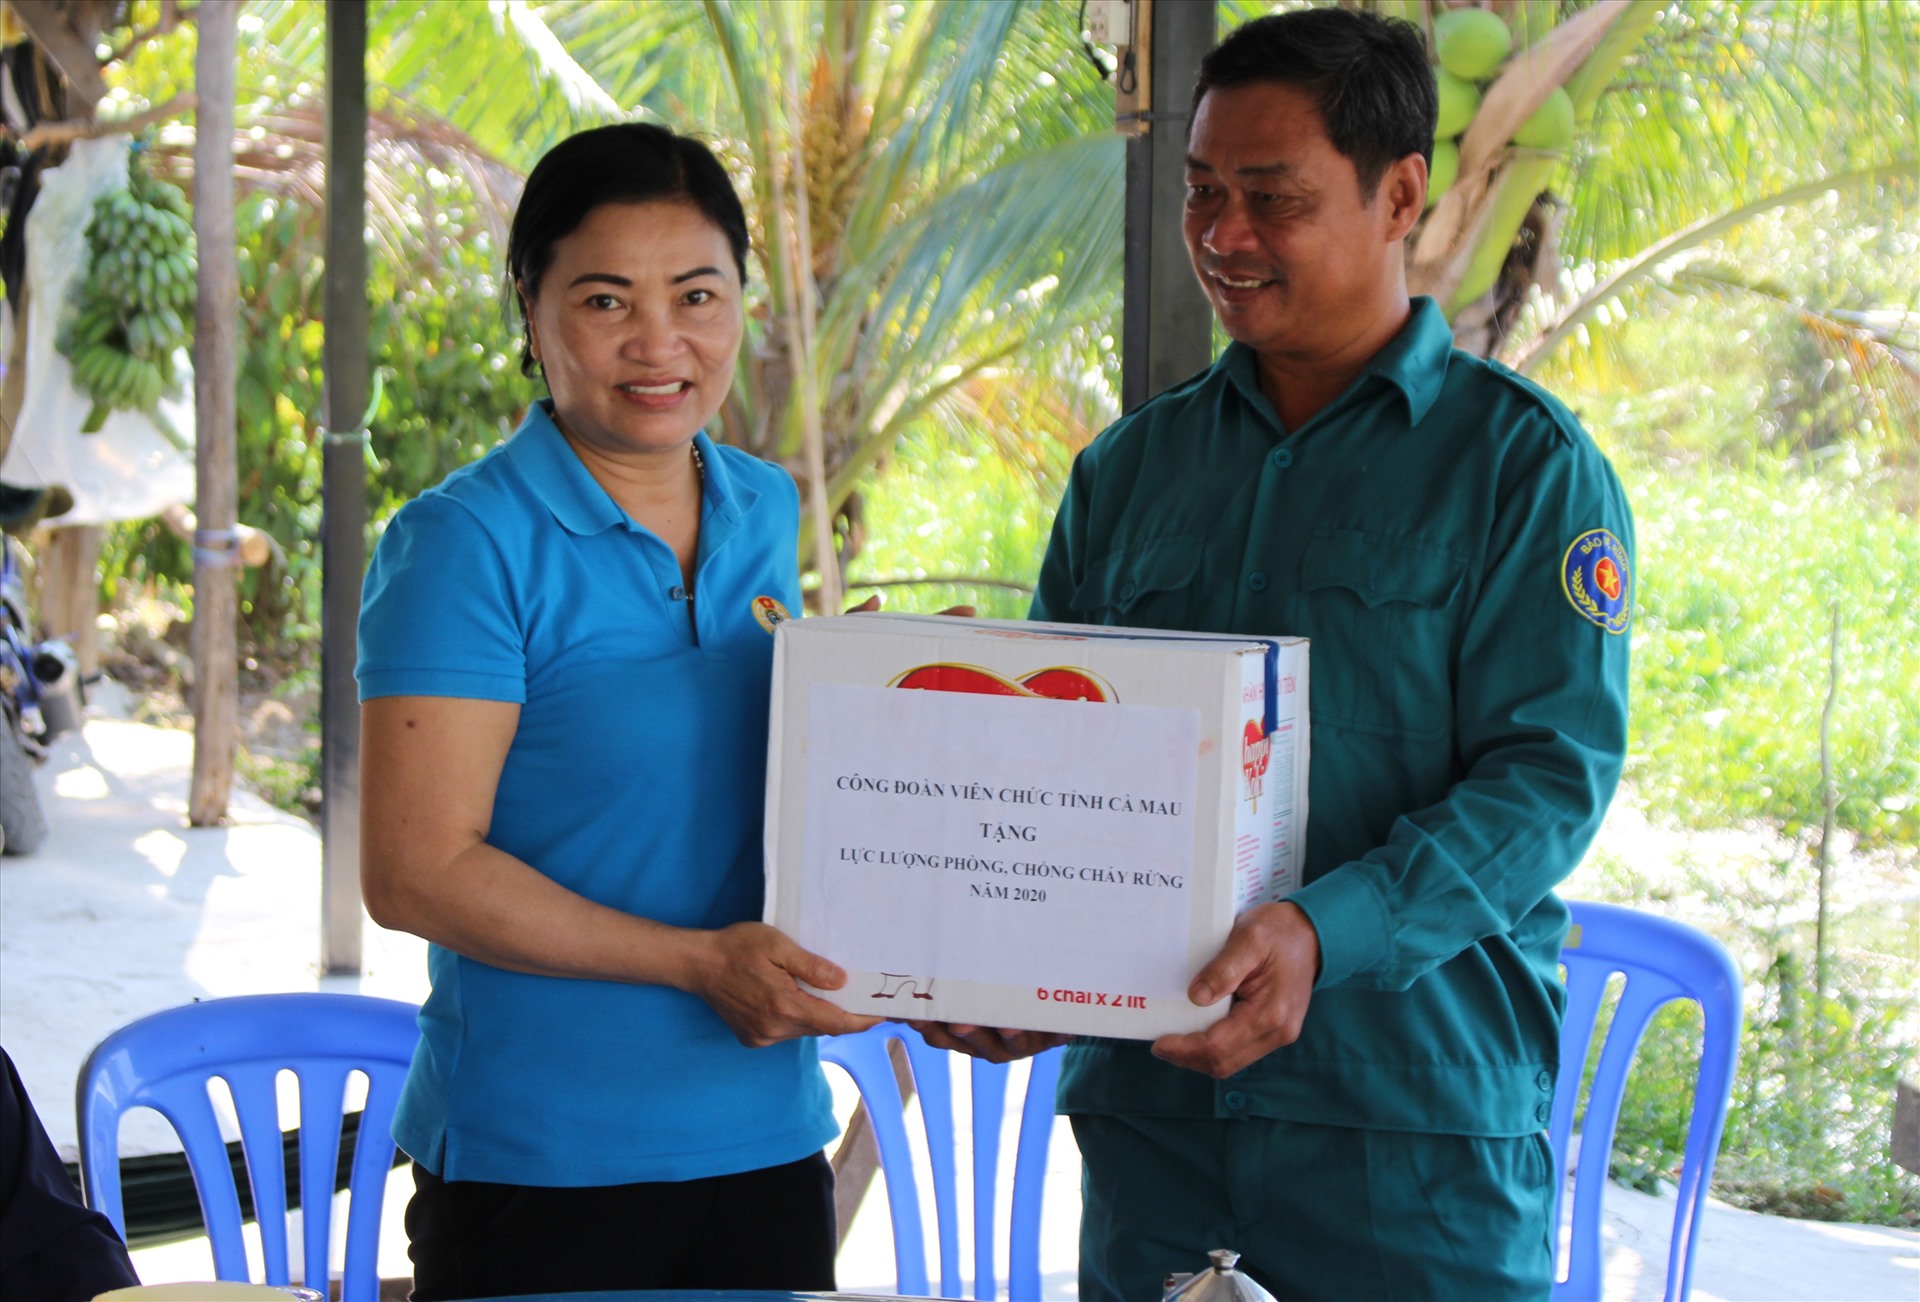 Đâị diện Công đoàn viên chức tặng quà cho lực lượng phòng chống cháy rừng U Minh Hạ (ảnh  Thiện Vũ)